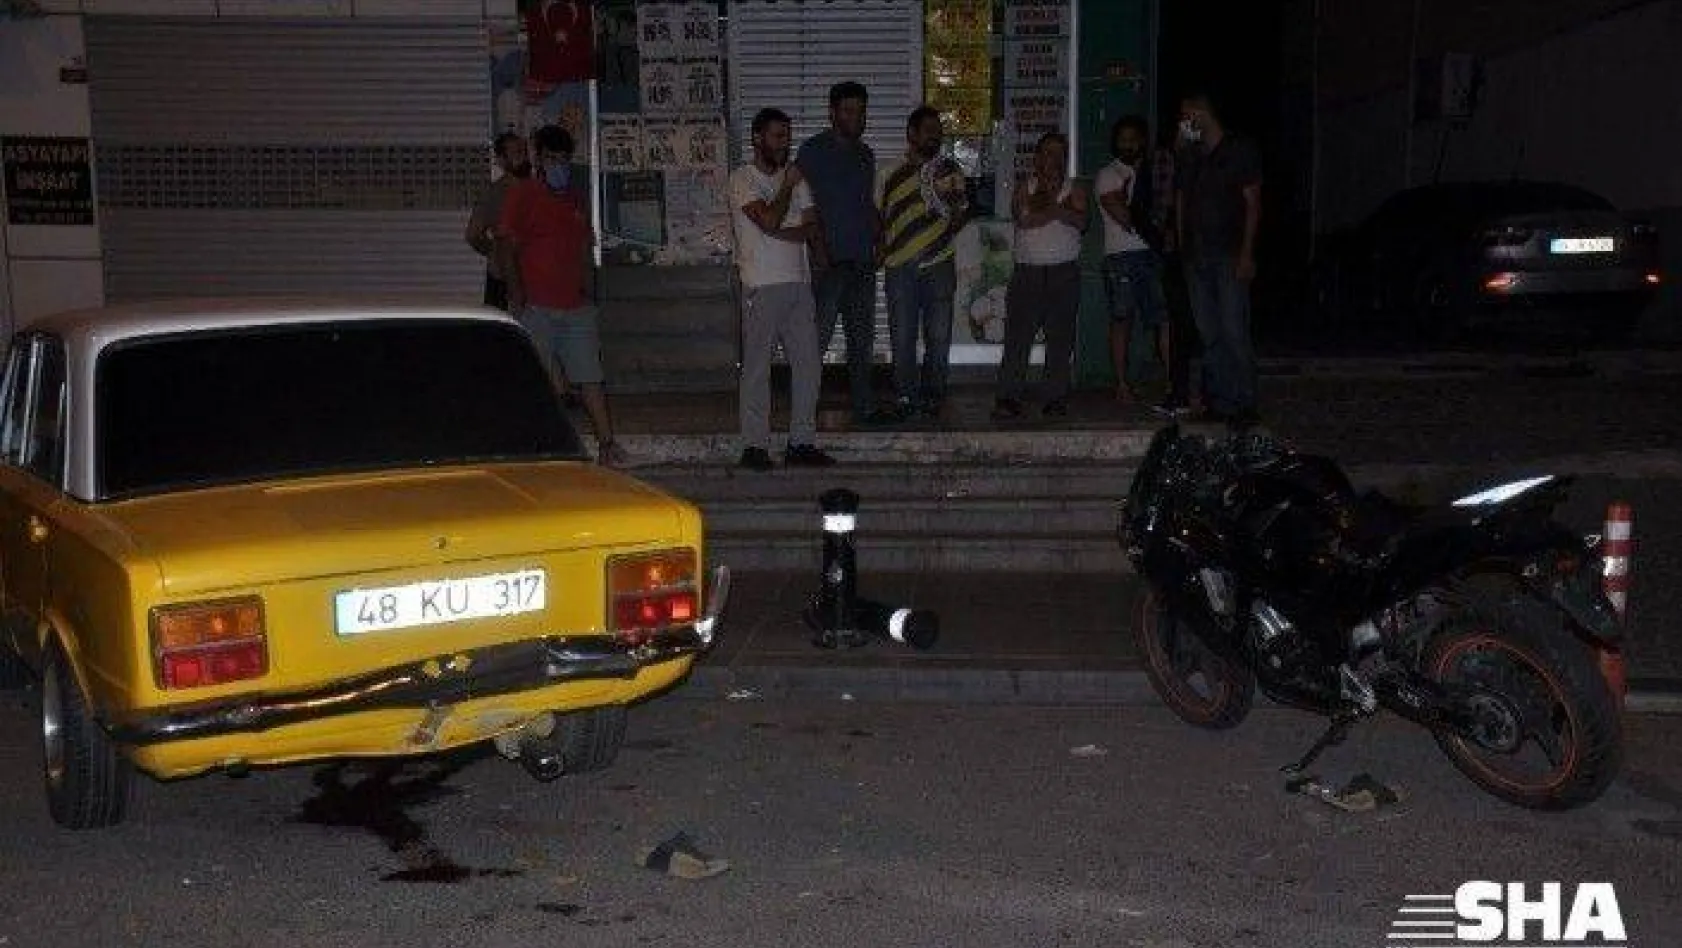 Kartal'da korkunç motosiklet kazası! 1 ölü